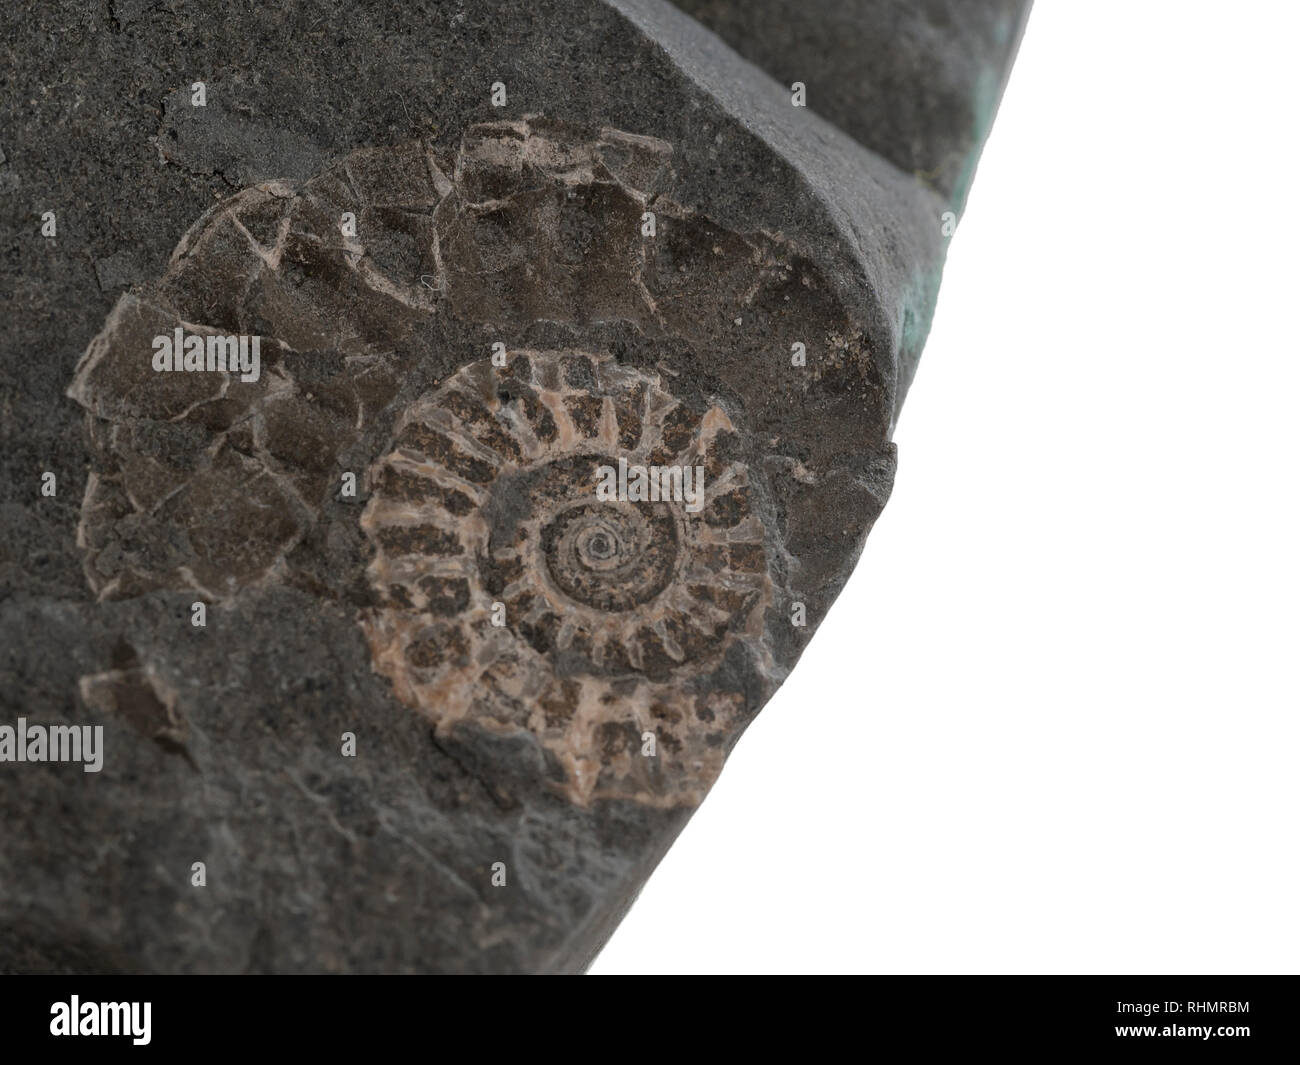 Nahaufnahme der kleine Ammoniten prähistorische Fossil auf Stein. Auf Jurassic Coast gefunden, in der Nähe von Lyme Bay, Großbritannien. Archäologie, Paläontologie, auf weissem isoliert. Stockfoto